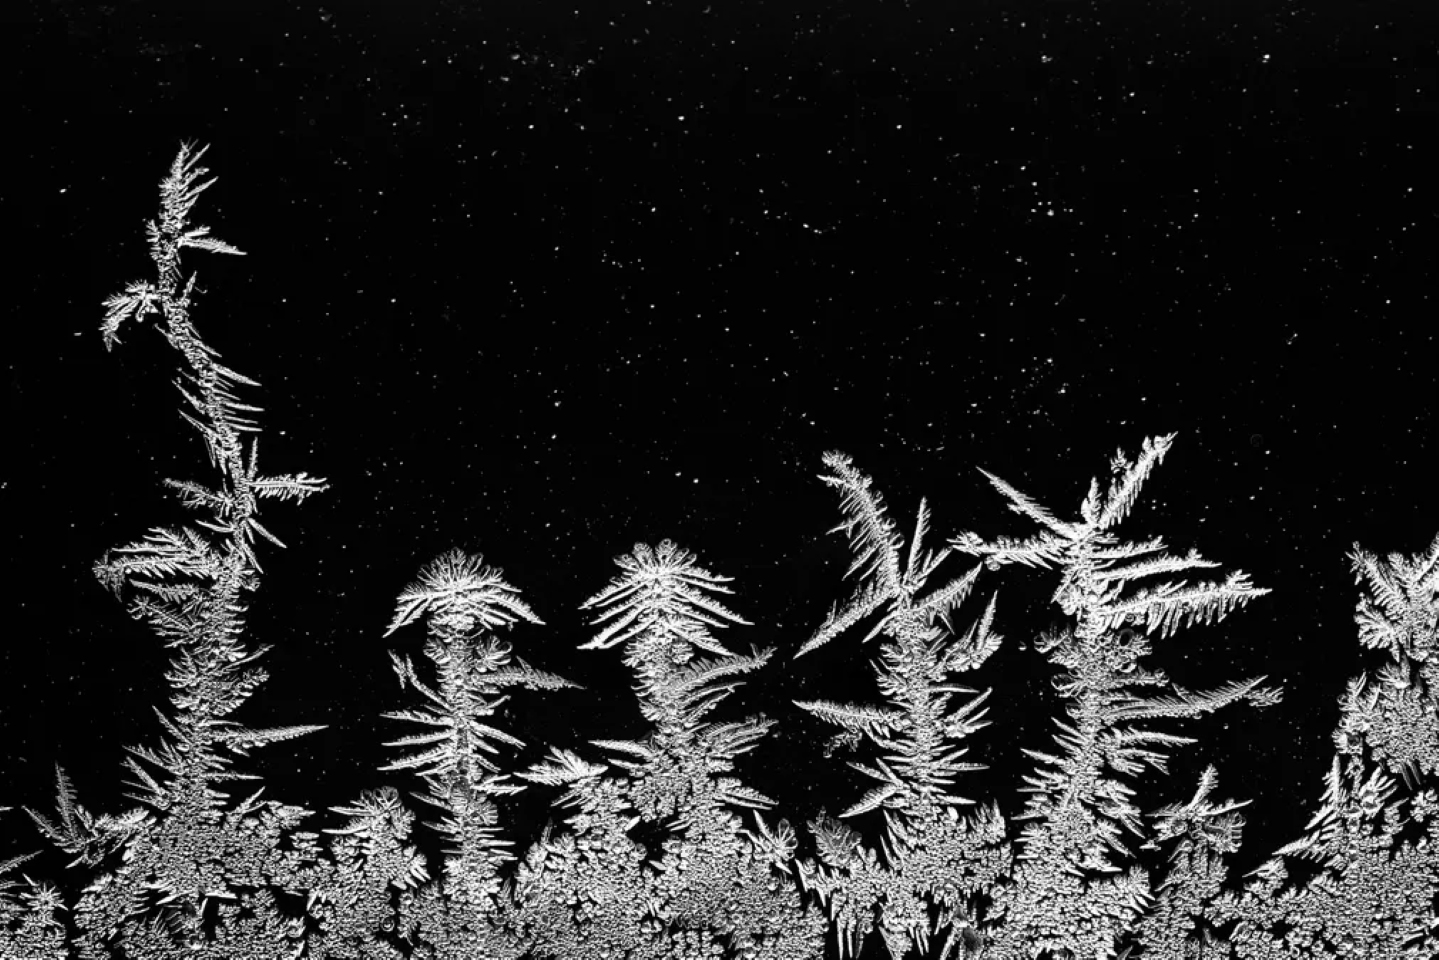 Третье место в категории «Интимные пейзажи». Эти ледяные кристаллы застряли внутри оконного стекла из термопласта холодной ночью, напомнив фотографу «скандинавский пейзаж с соснами и звездным небом». Фото: Edwin Giesbers / CUPOTY